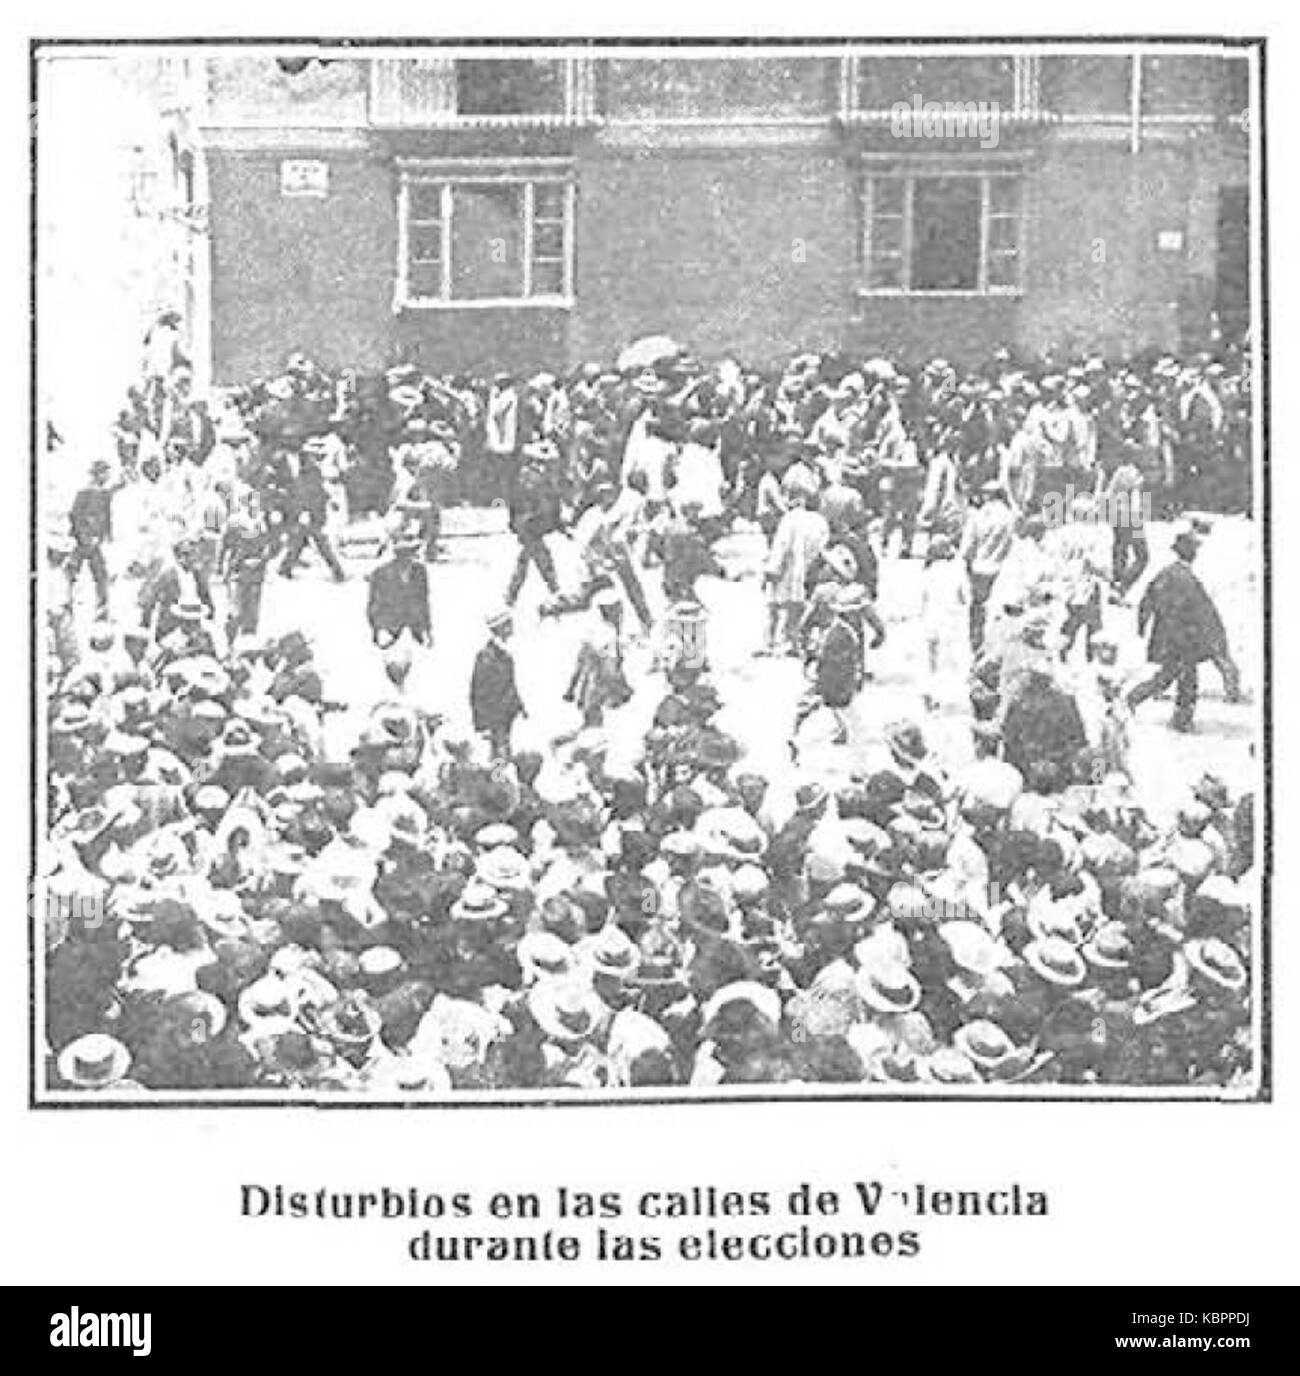 Disturbios en las calle de Valencia durante las elecciones, Nuevo Mundo, 14 de septiembre de 1905 Stock Photo